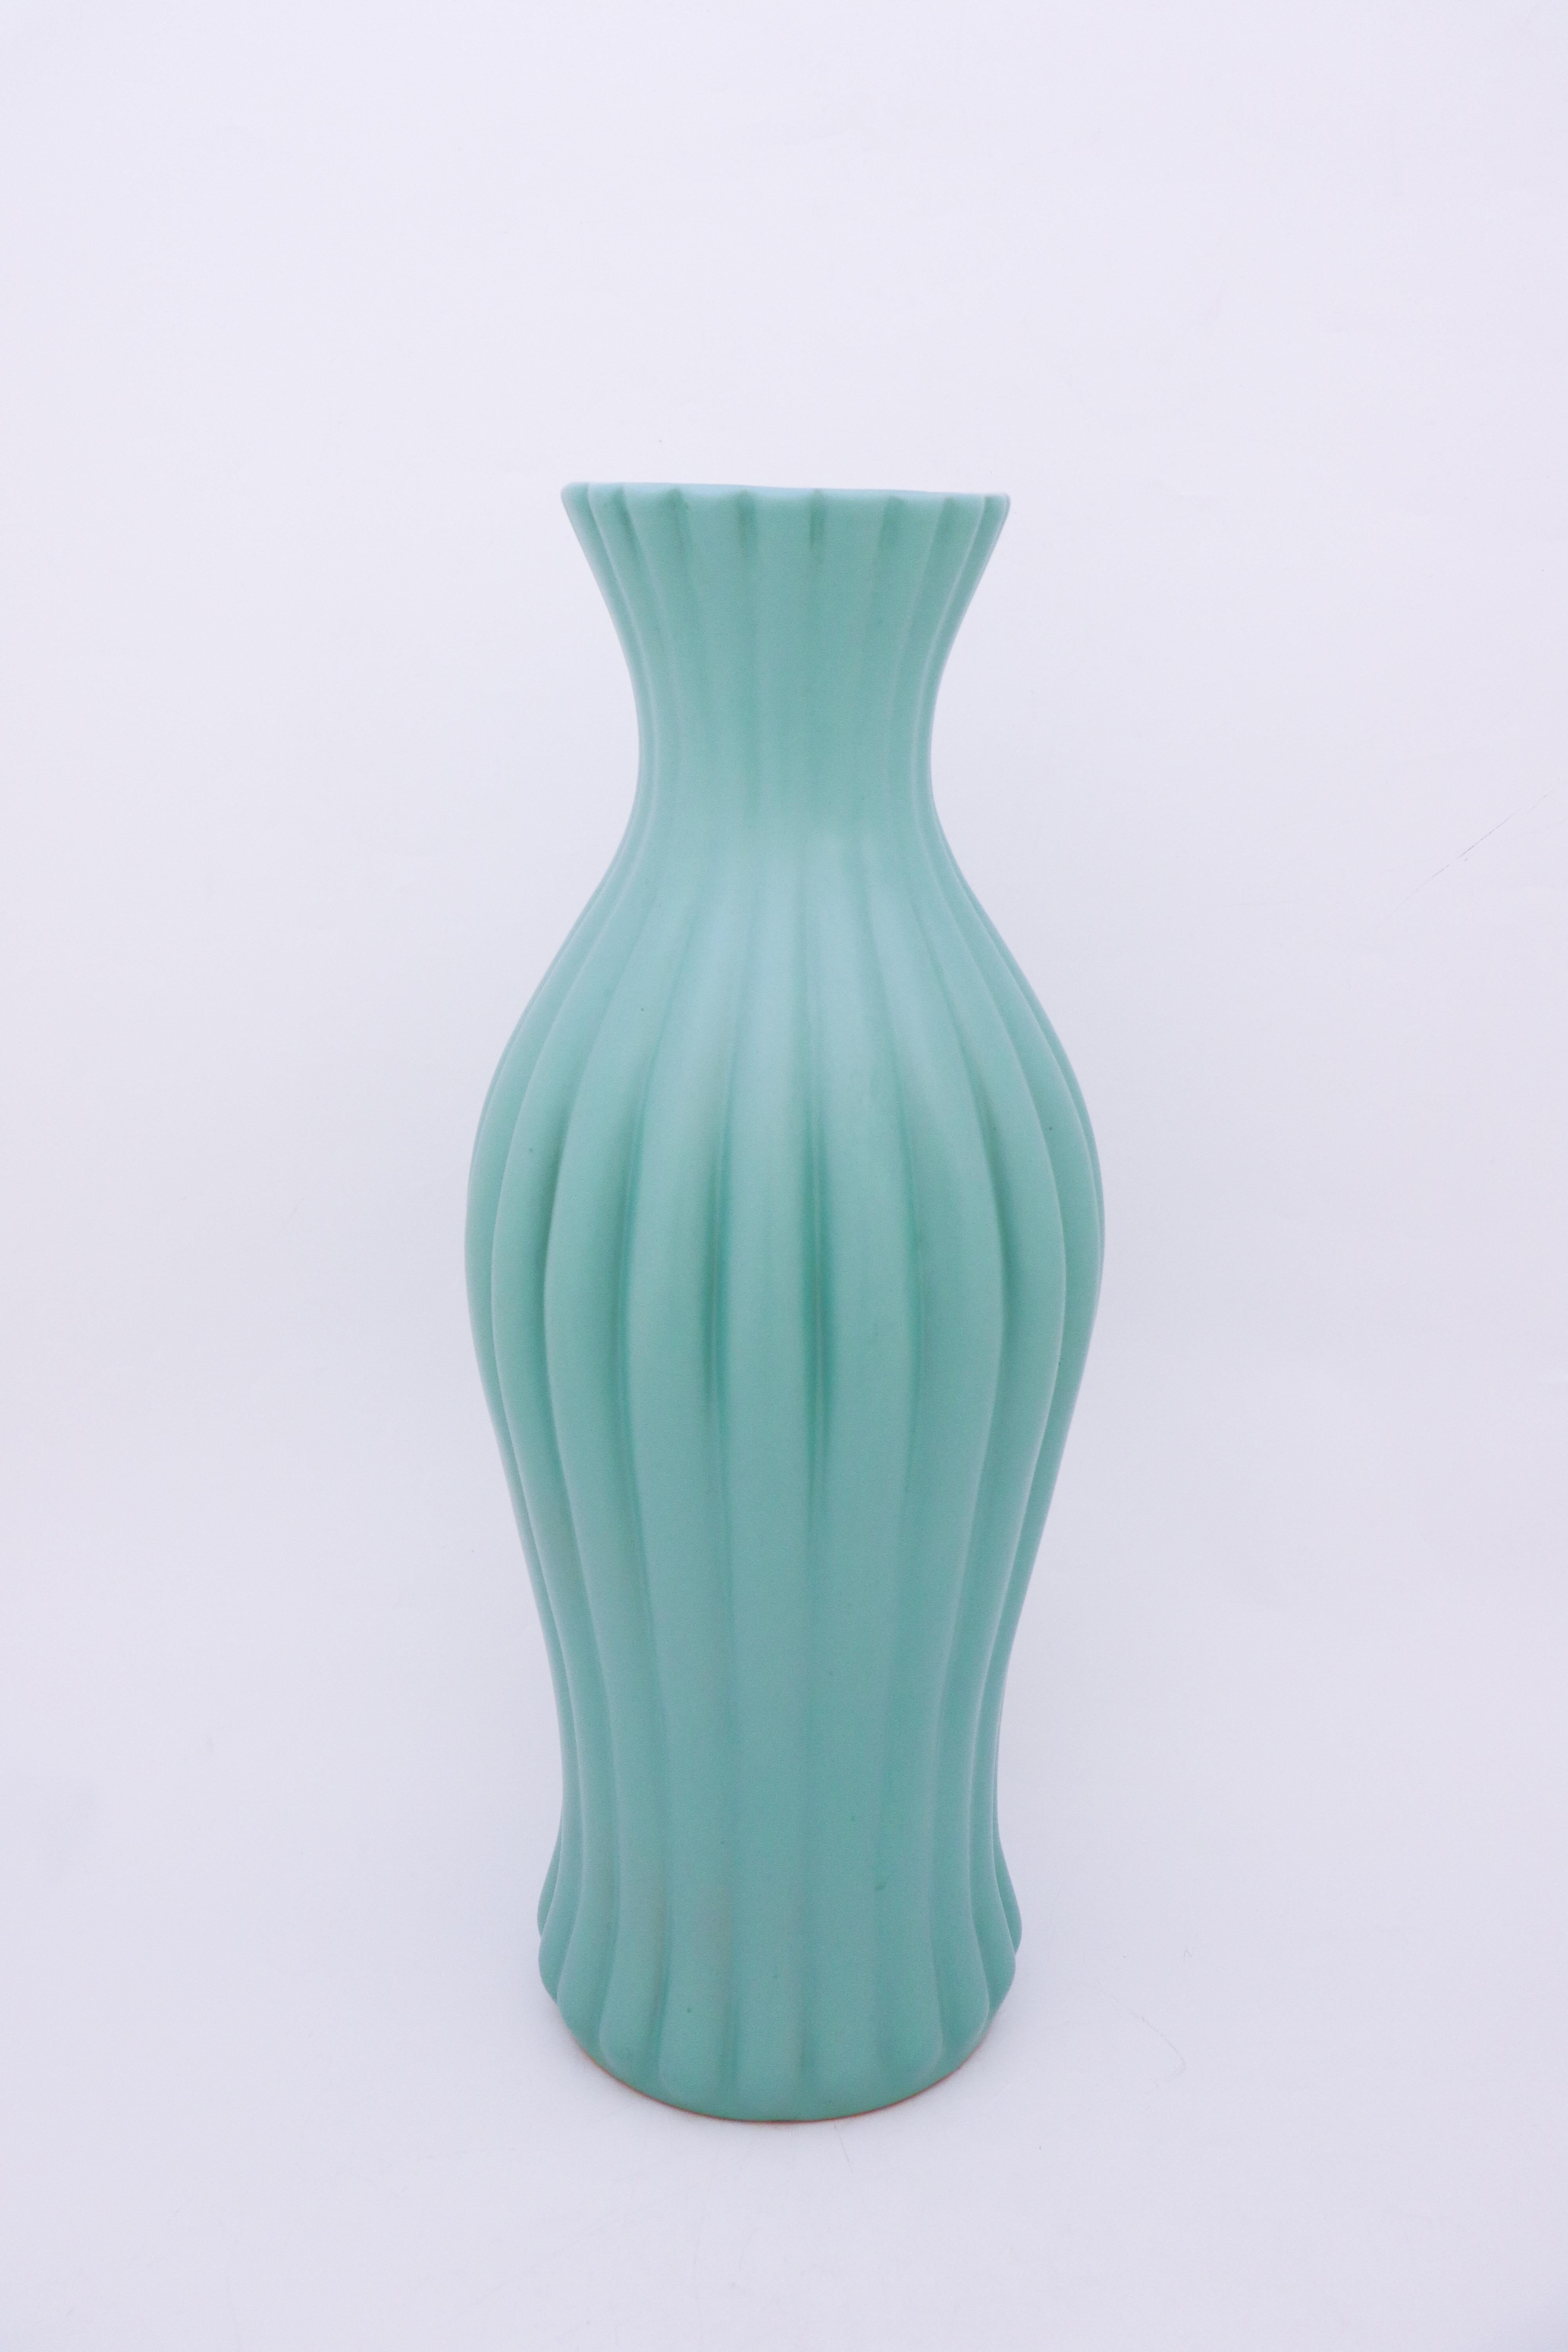 Eine große türkisfarbene Bodenvase, entworfen von Ewald Dahlskog bei Bo Fajans in Gefle in den 1930er Jahren. Die Vase ist 52 cm hoch.